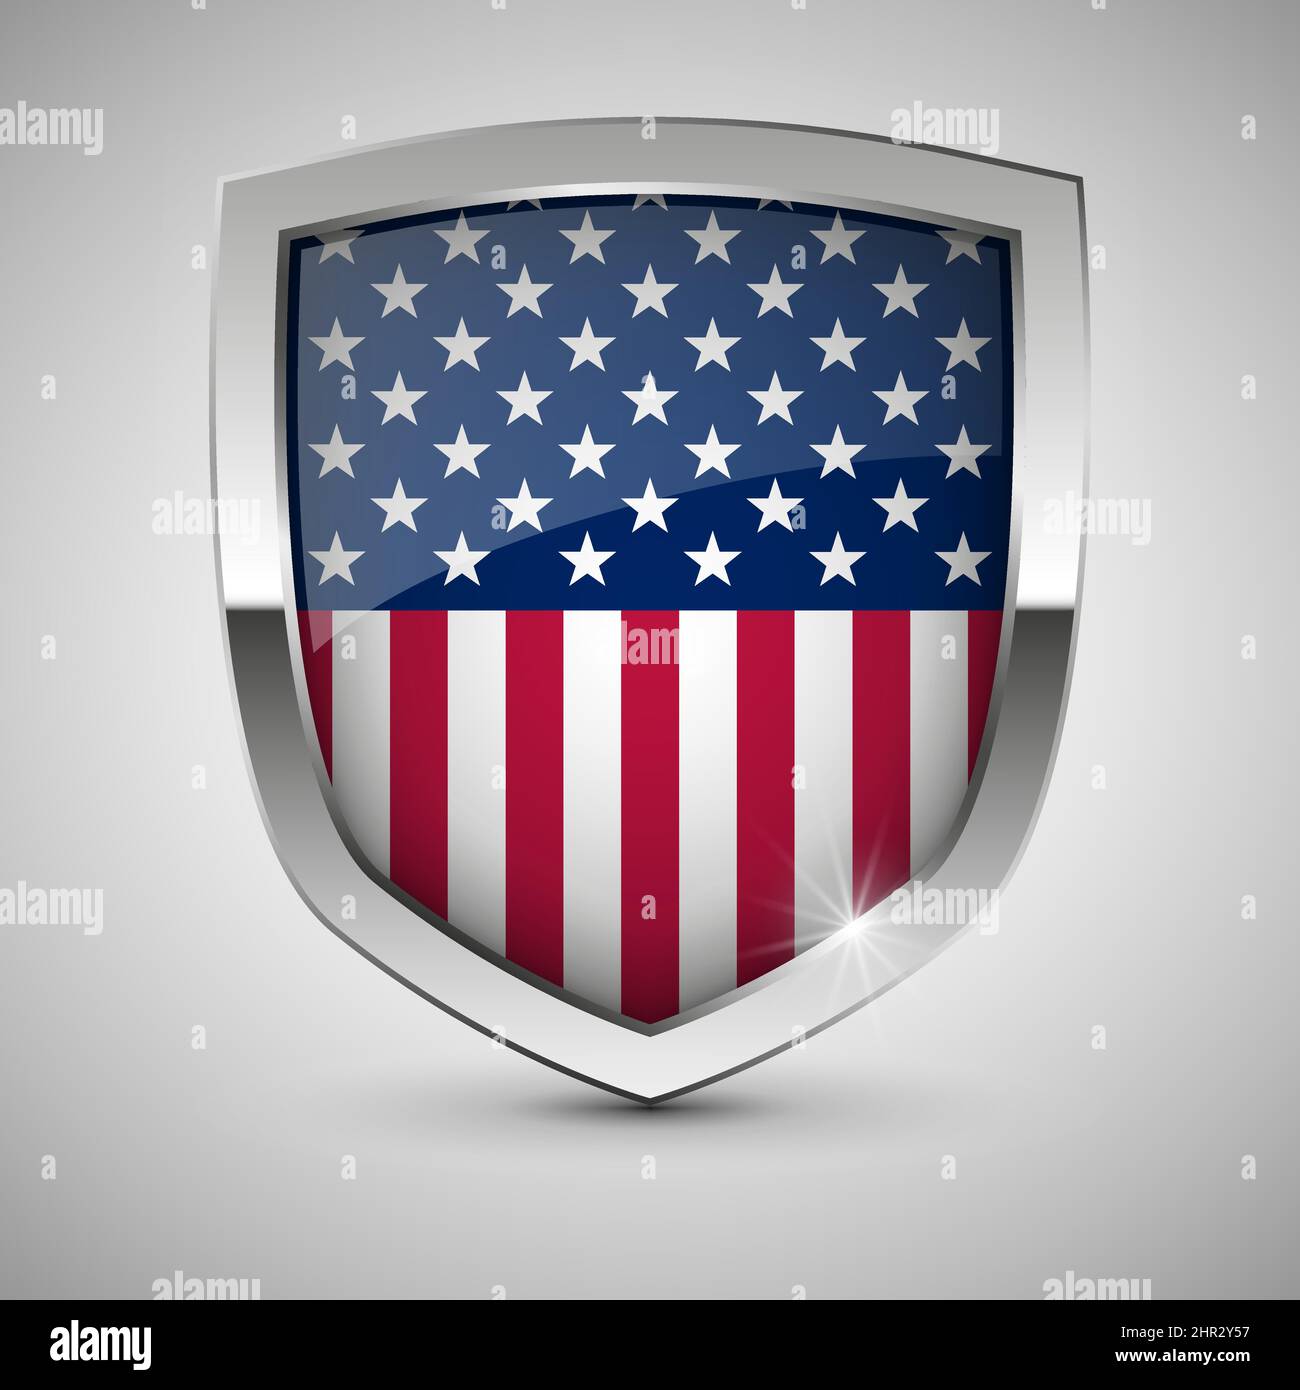 EPS10 bouclier patriotique Vector avec drapeau des Etats-Unis. Un élément d'impact pour l'utilisation que vous voulez en faire. Illustration de Vecteur